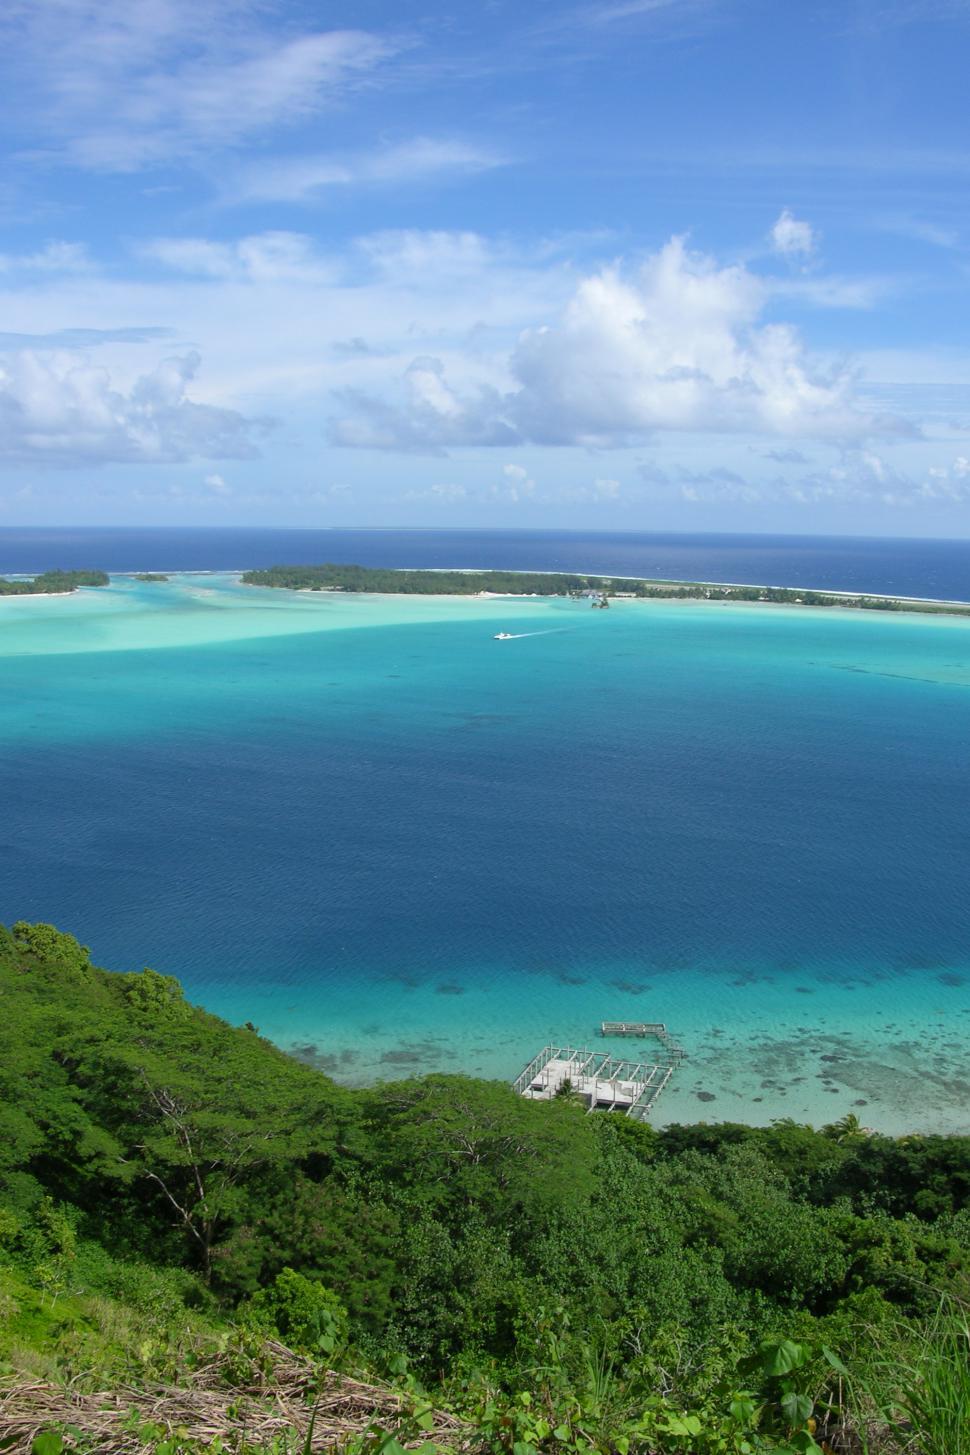 Free Image of Bora Bora, Tahiti 2 